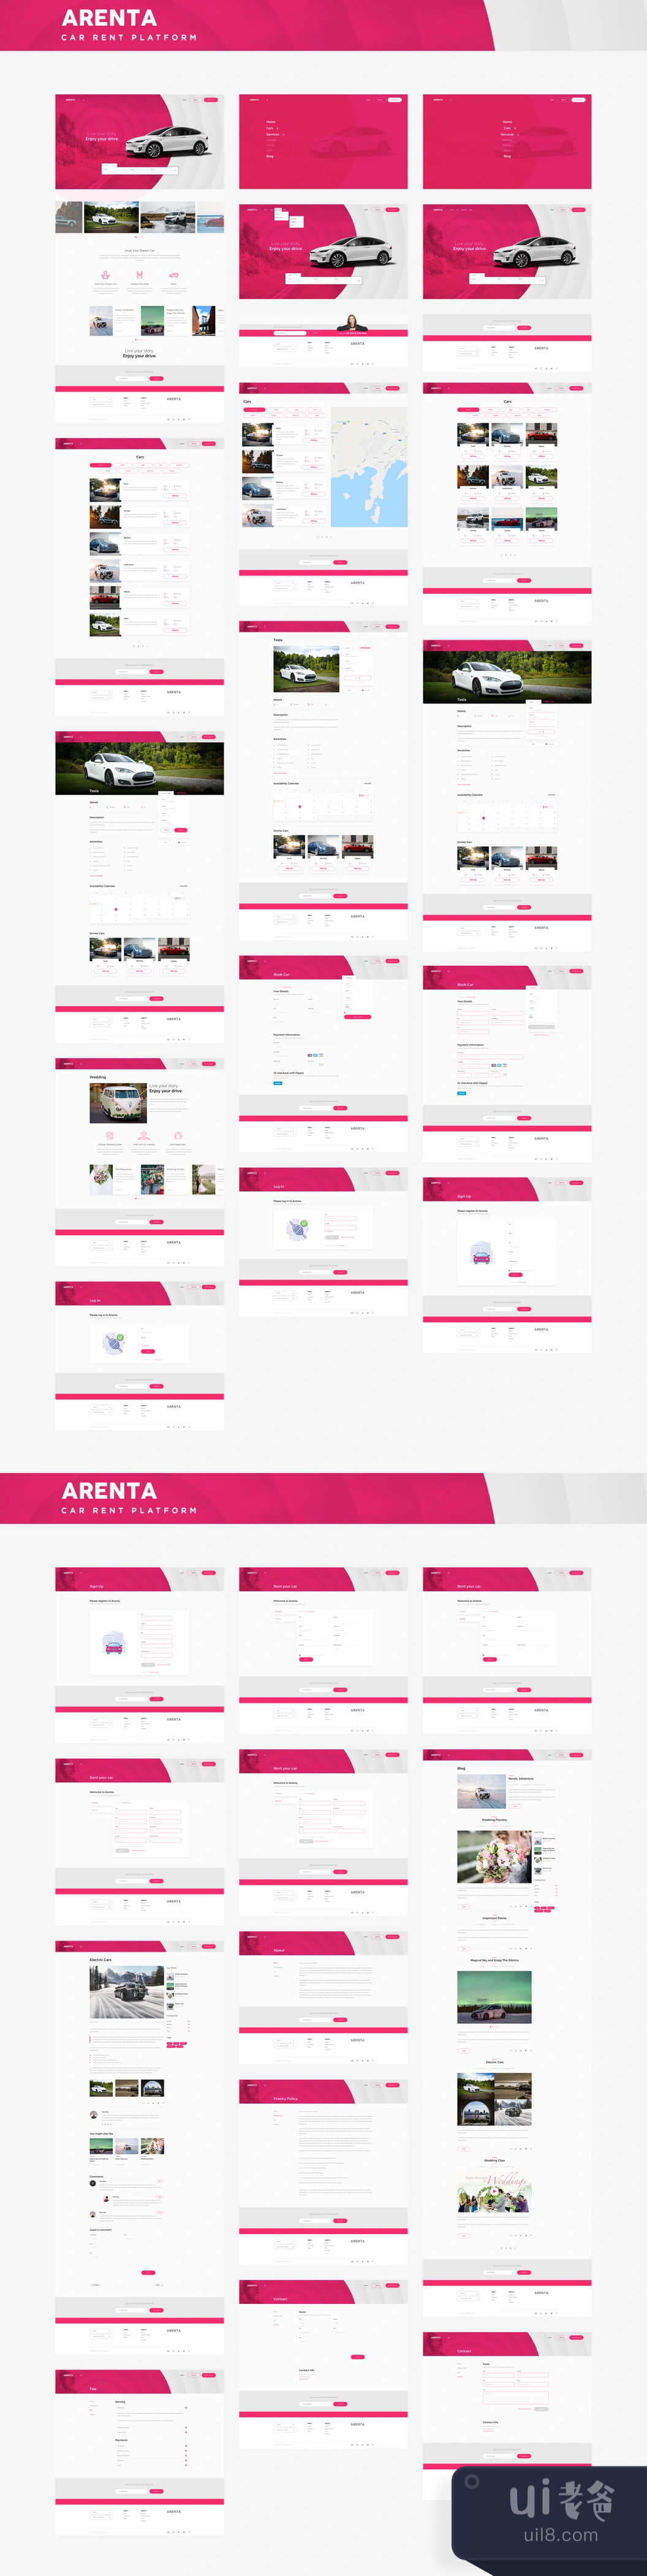 阿伦塔汽车租赁公司网页UI套件 (Arenta Car Rental Web UI Kit)插图